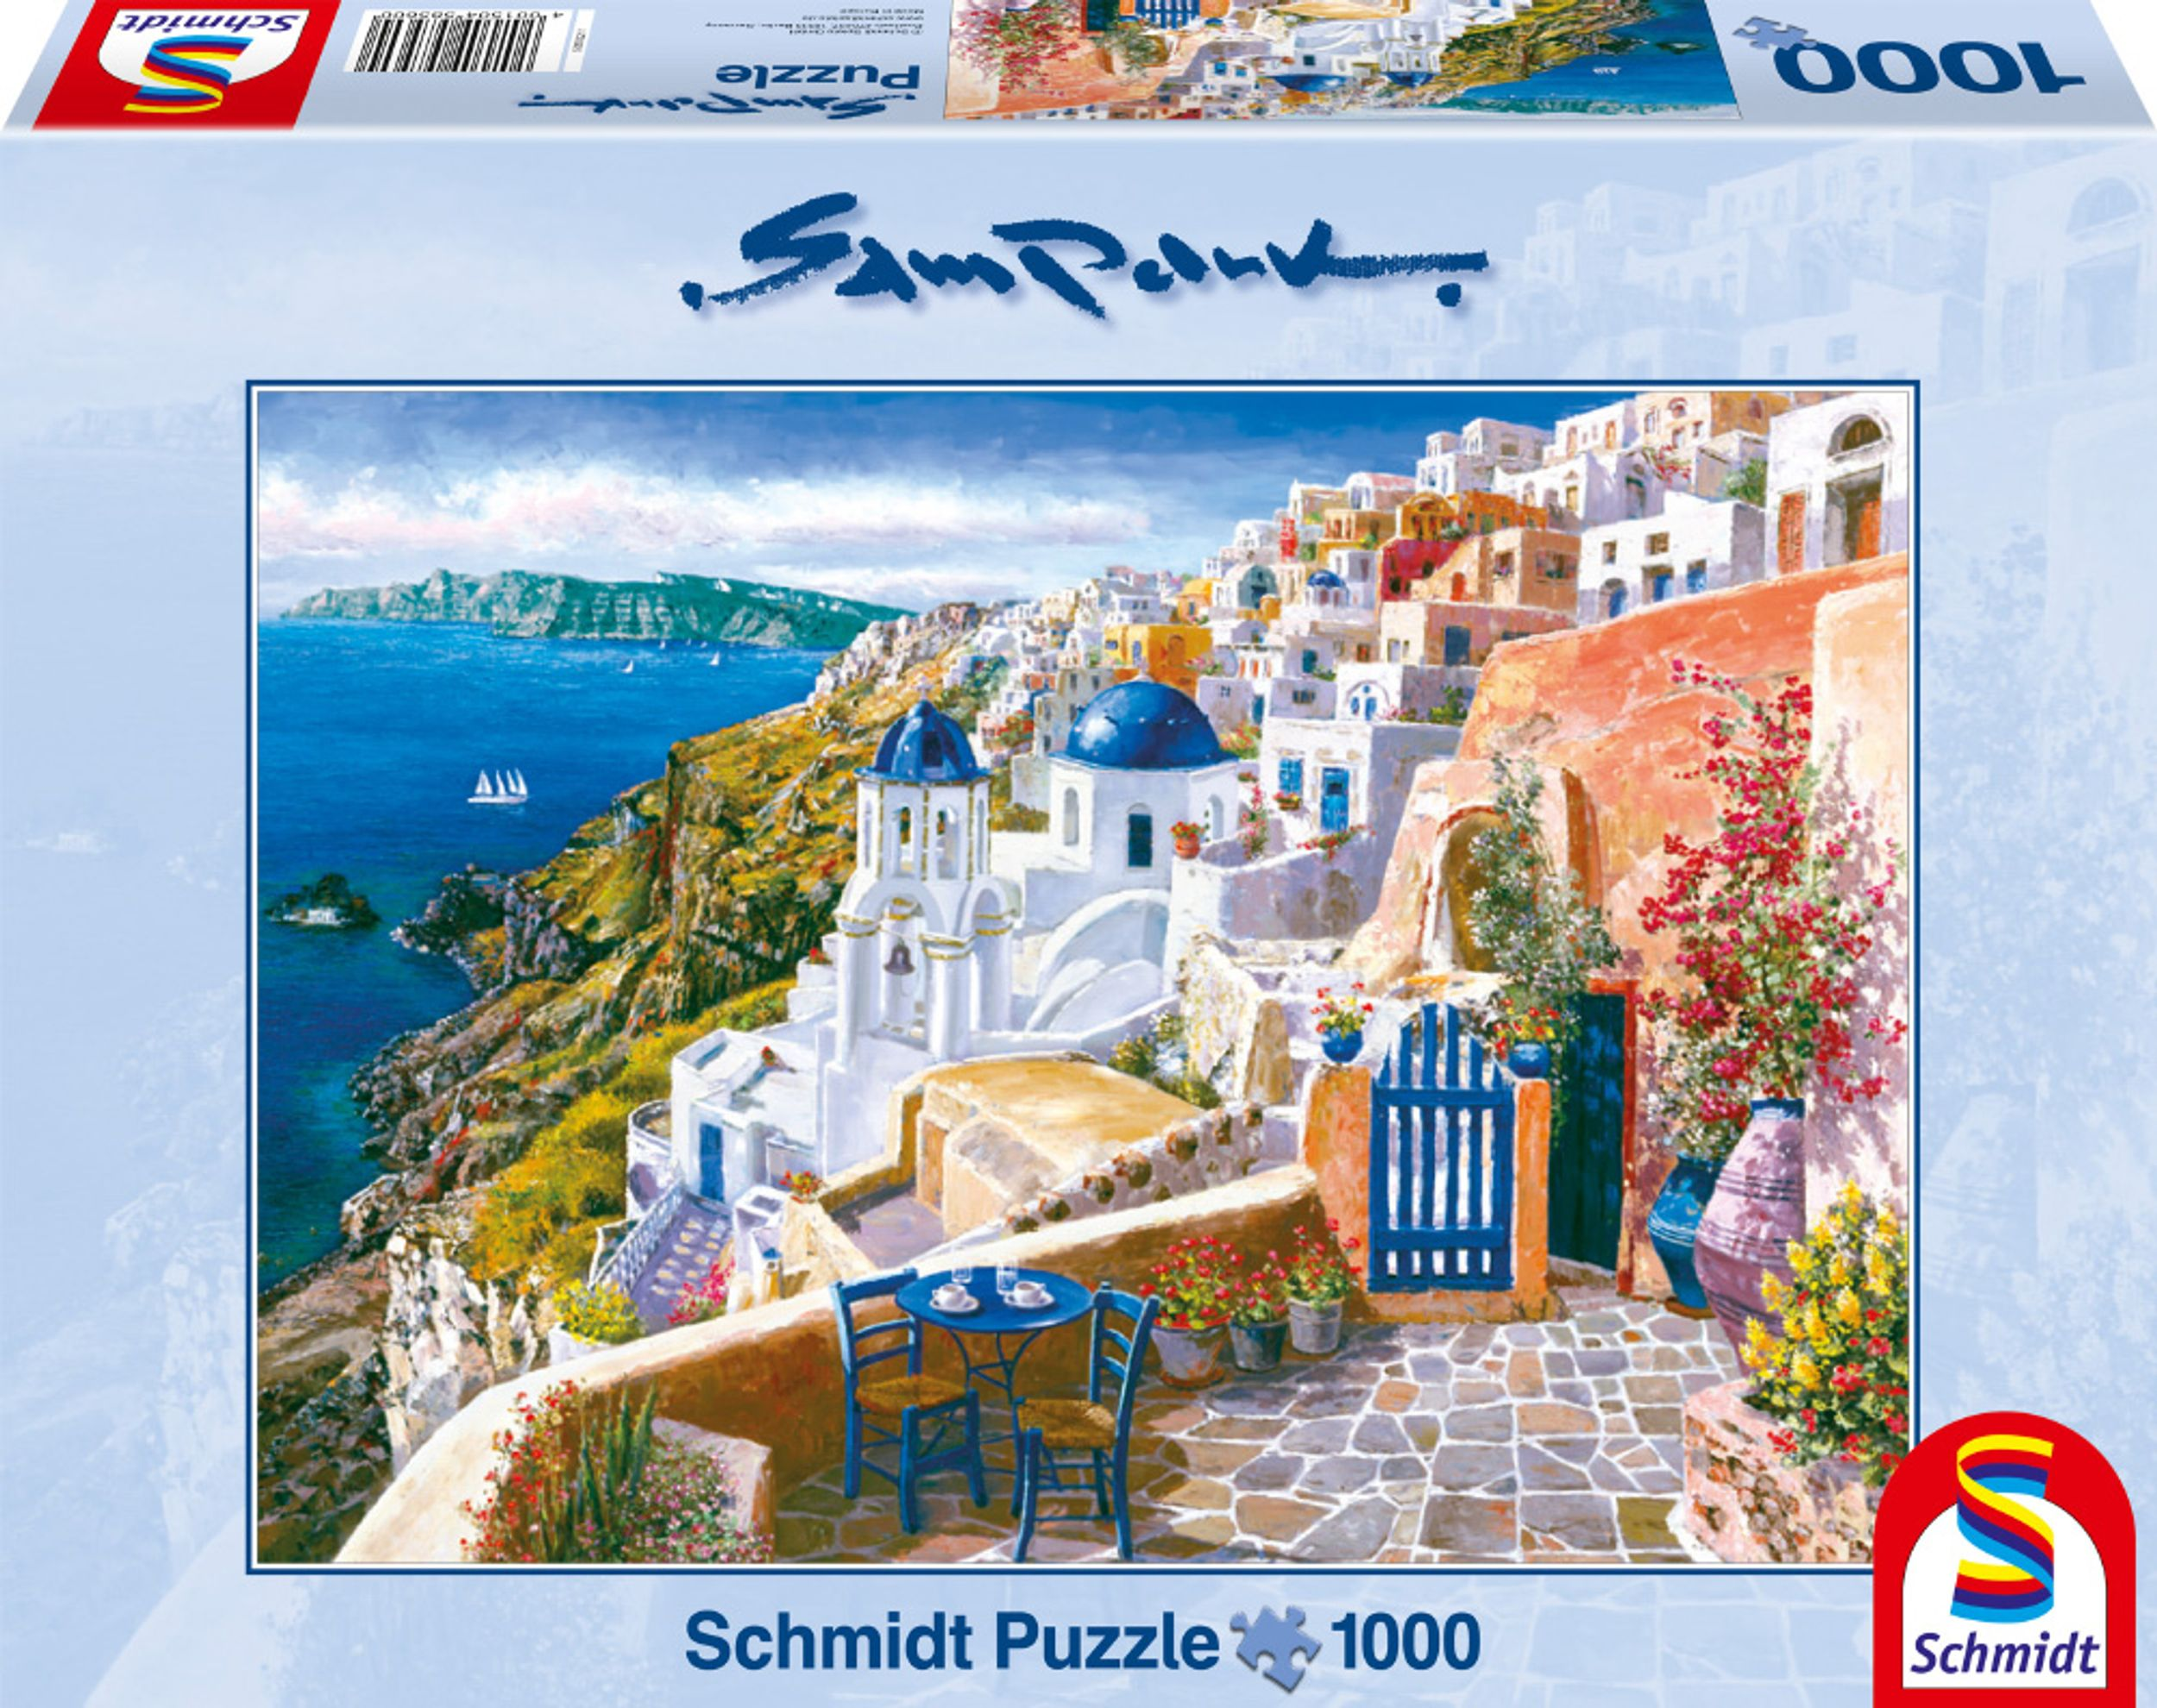 SCHMIDT SPIELE Blick Santorin von Puzzle